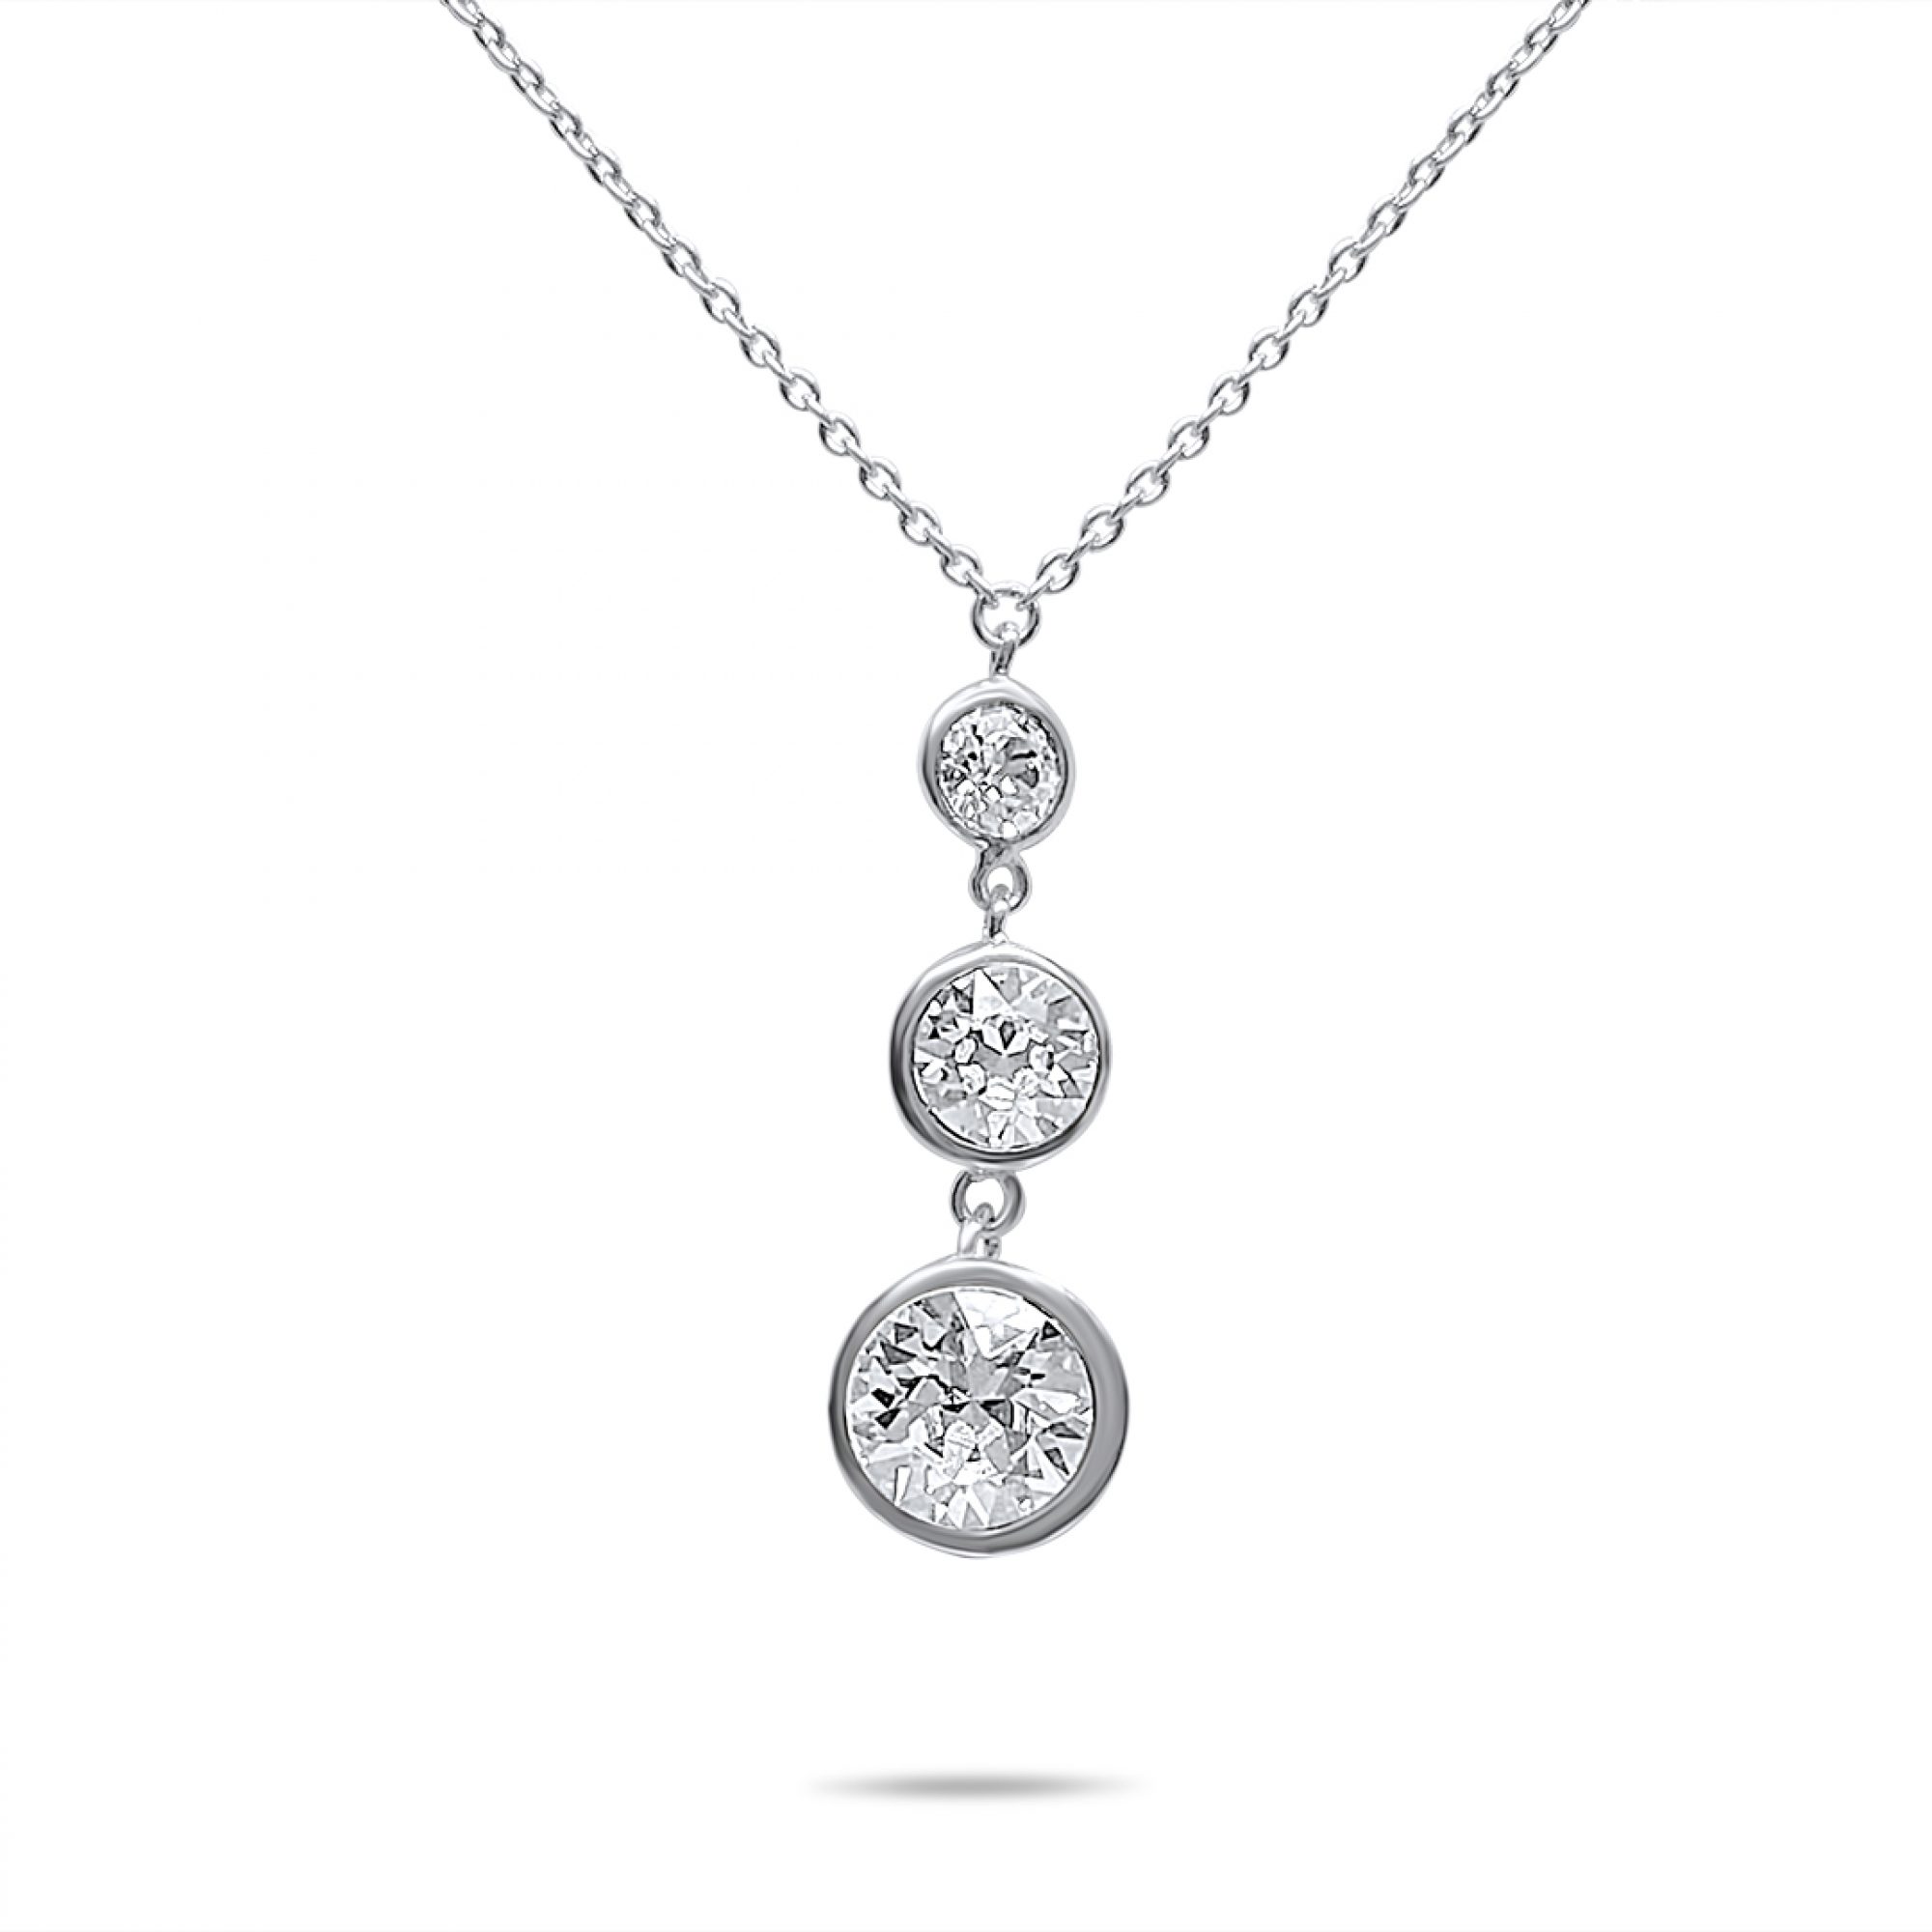 Necklace with zircon stones